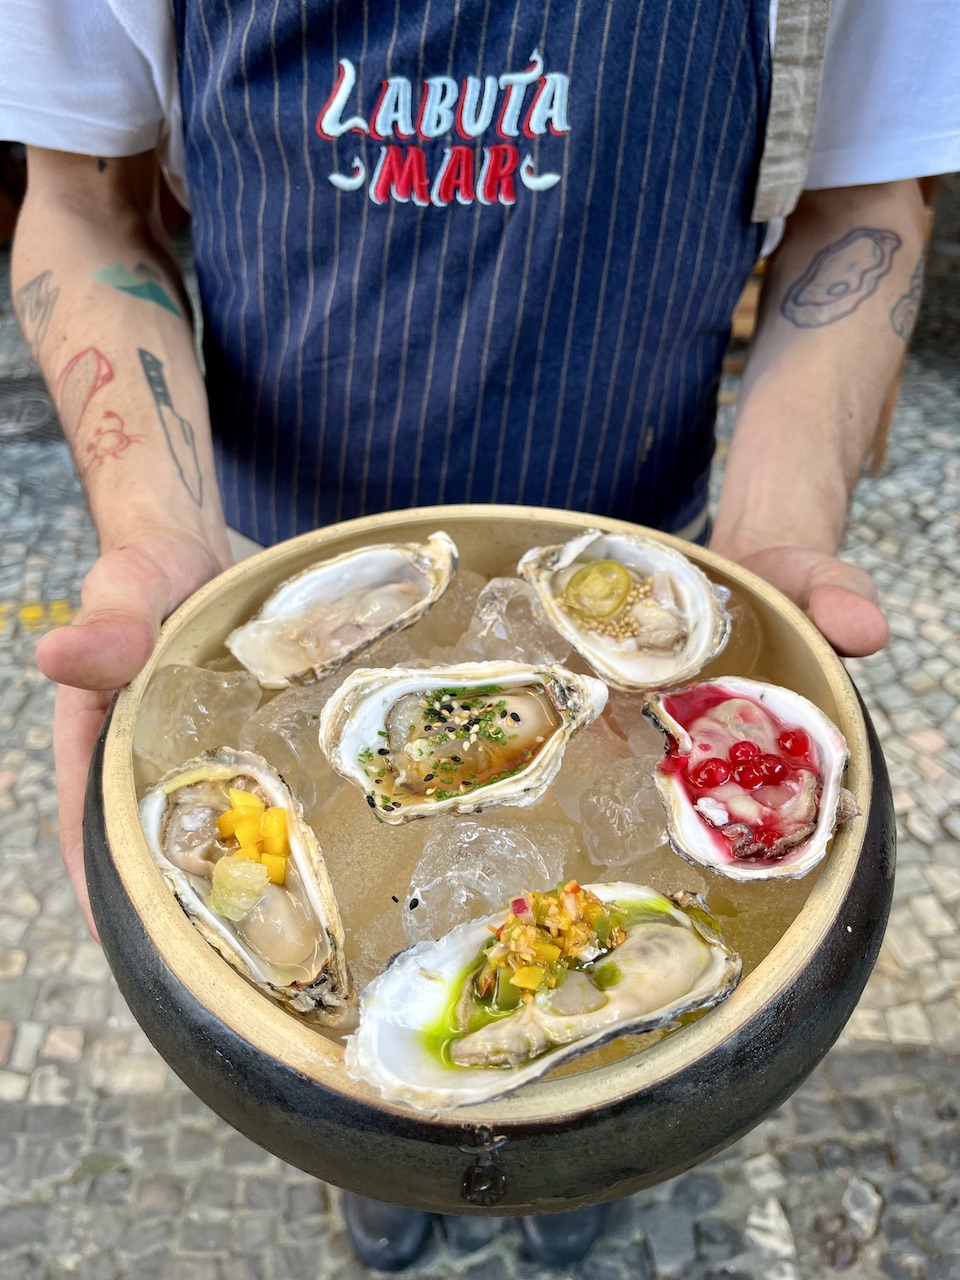 Labuta Mar: ostras ganham uma noite de sabores variados